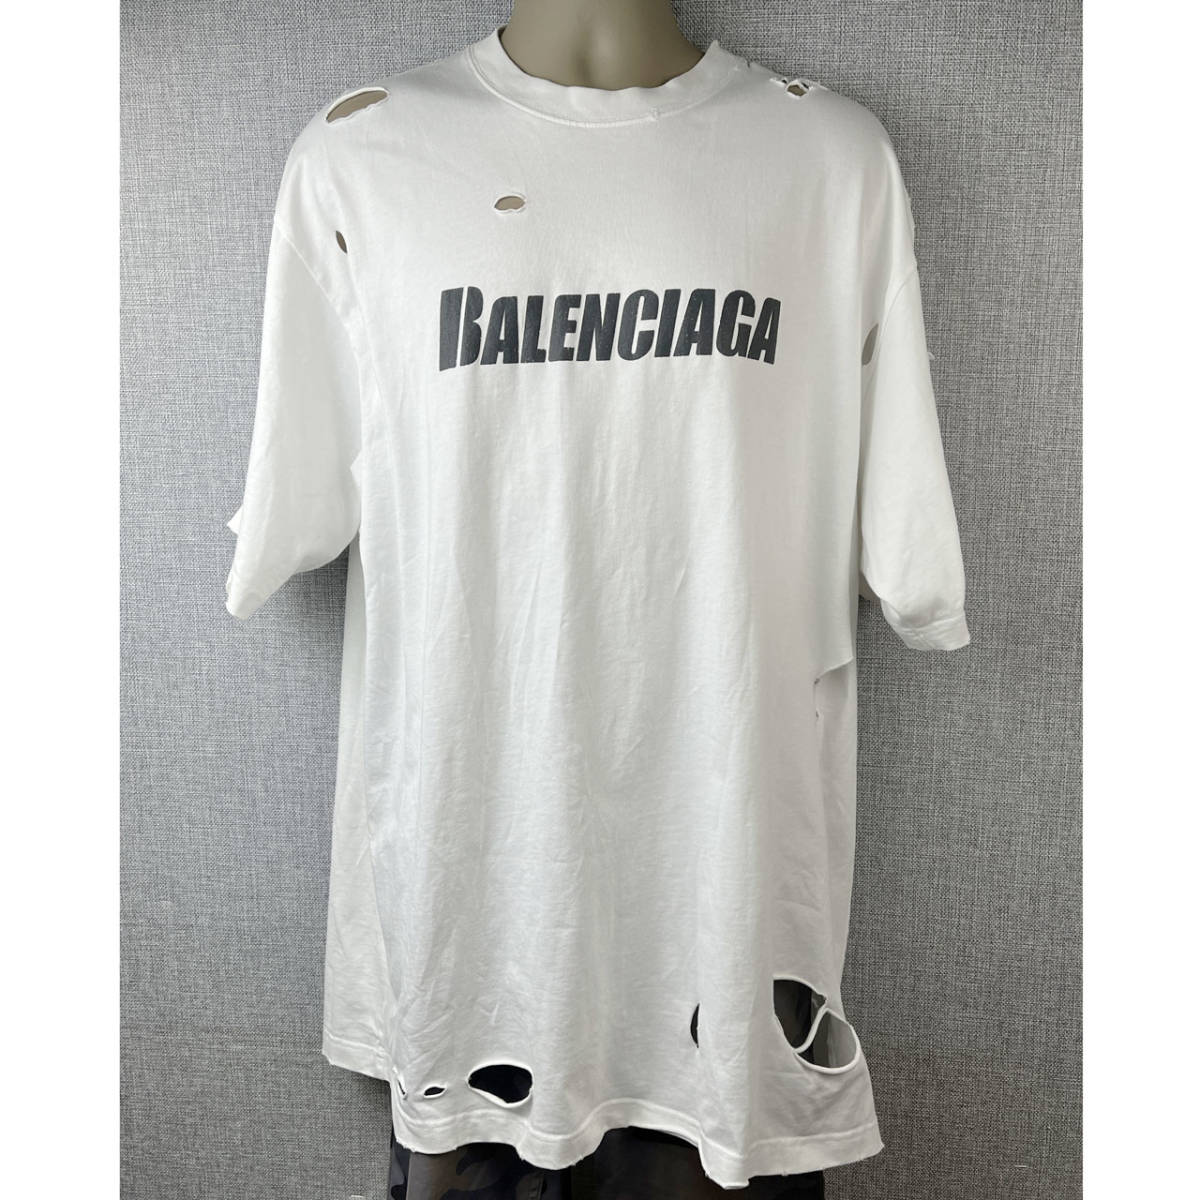 ヤフオク! -「balenciaga tシャツ」(は) (ブランド別)の落札相場・落札価格